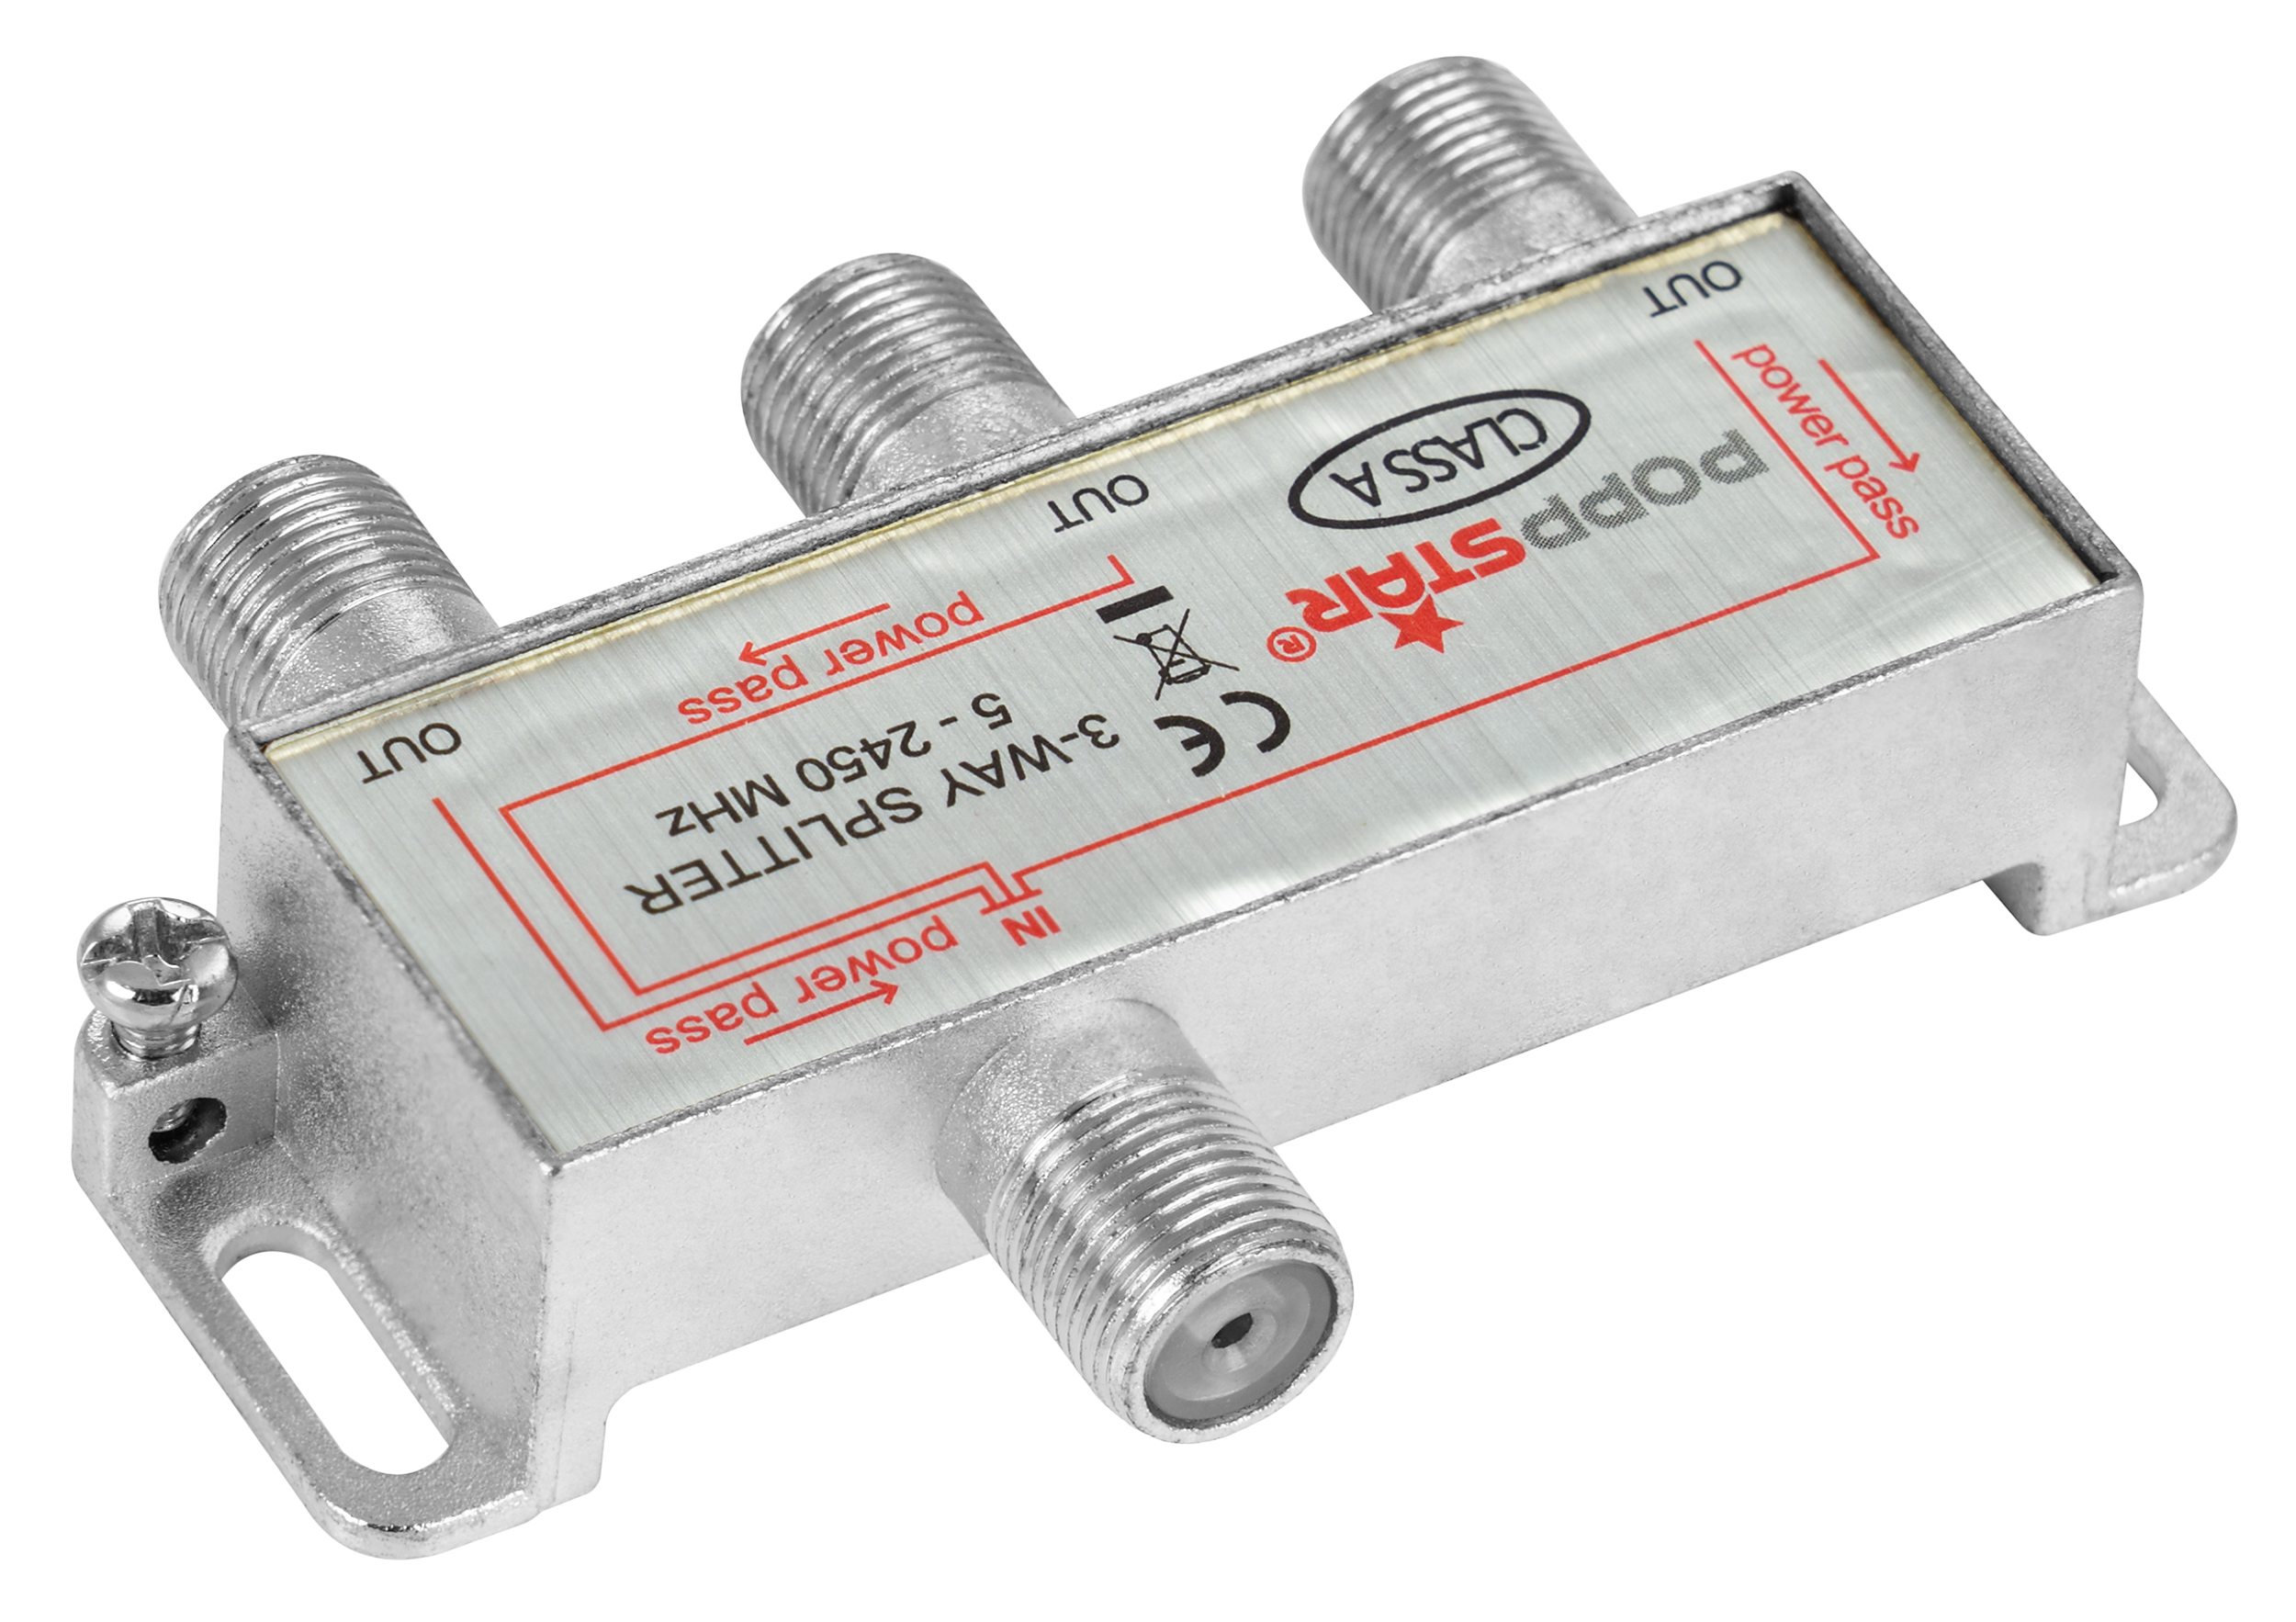 SAT Verteiler mit 3 Ausgängen + 4 Adapter (F-Stecker auf IEC)